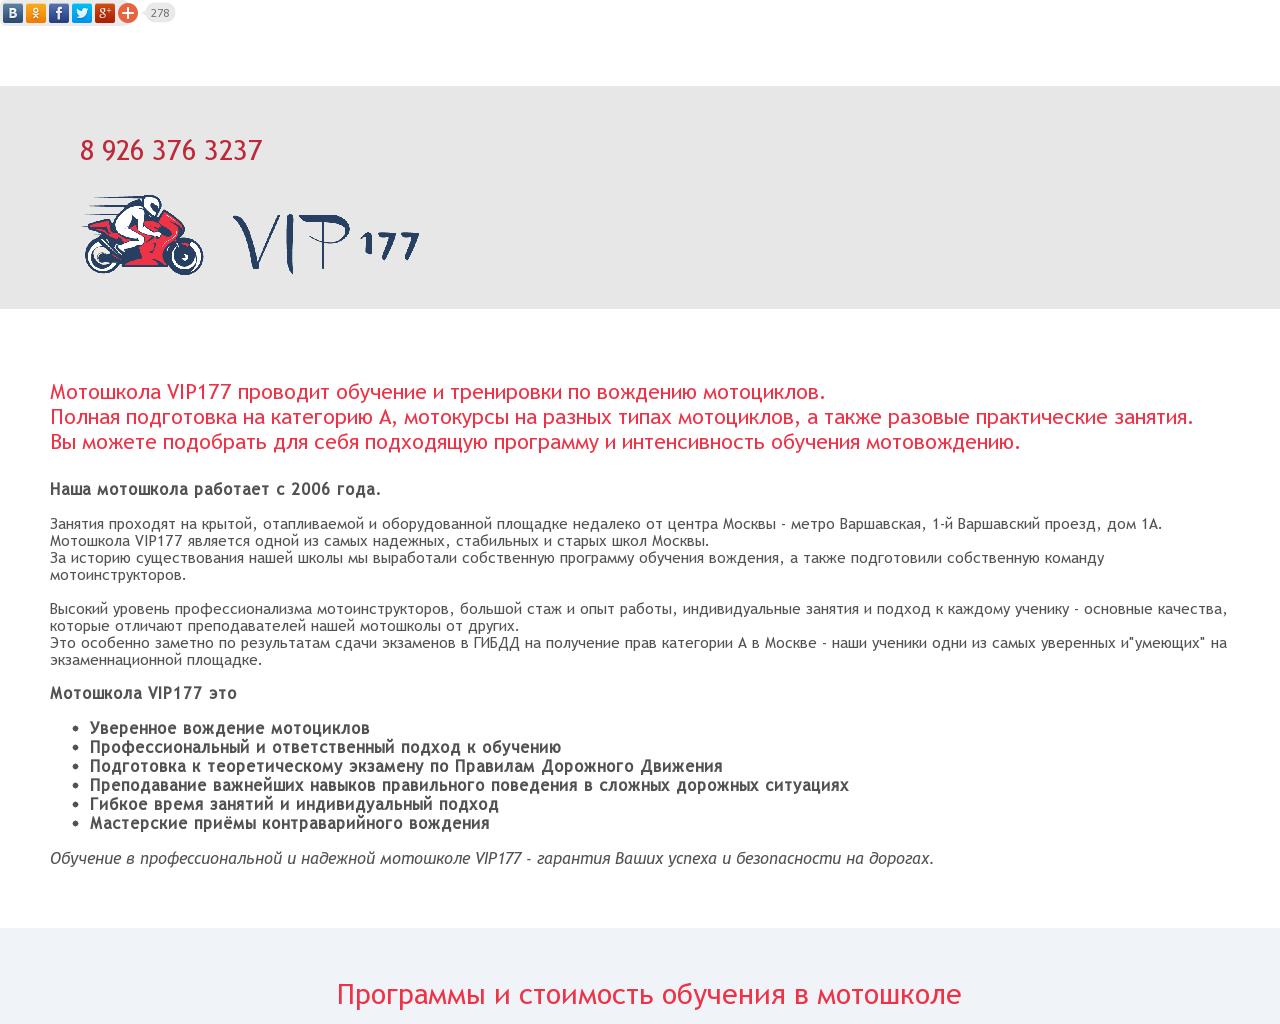 Изображение сайта vip177.ru в разрешении 1280x1024